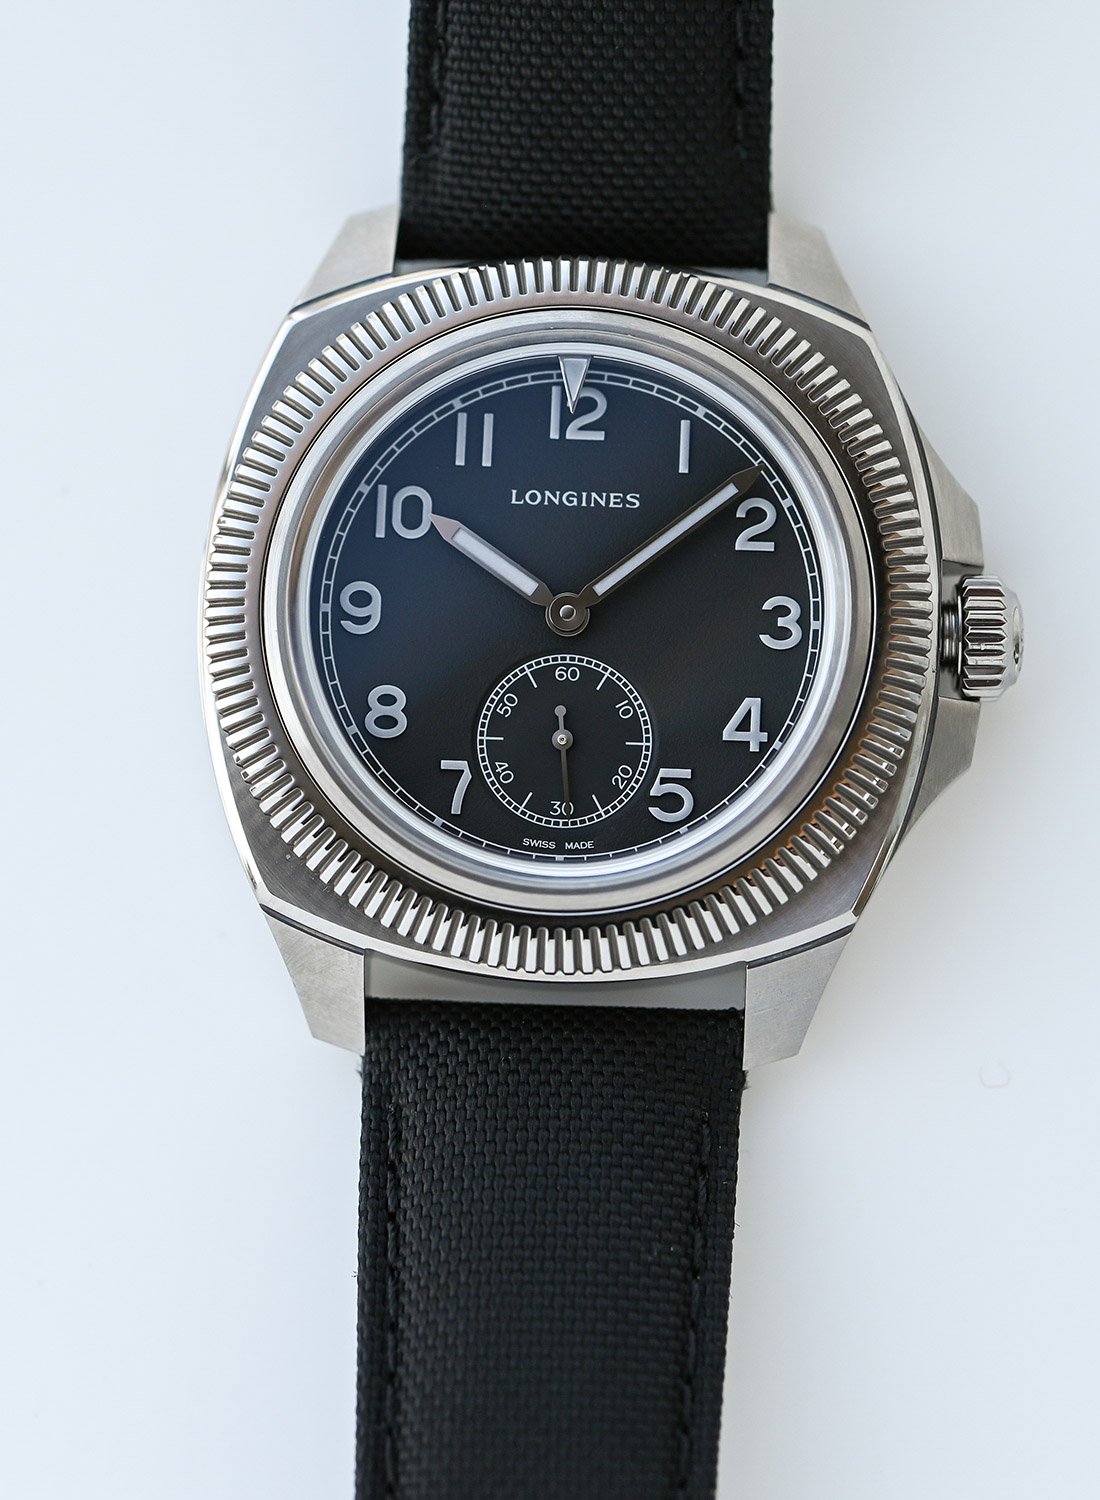 Титановые часы Longines Pilot Majetek Pioneer Edition